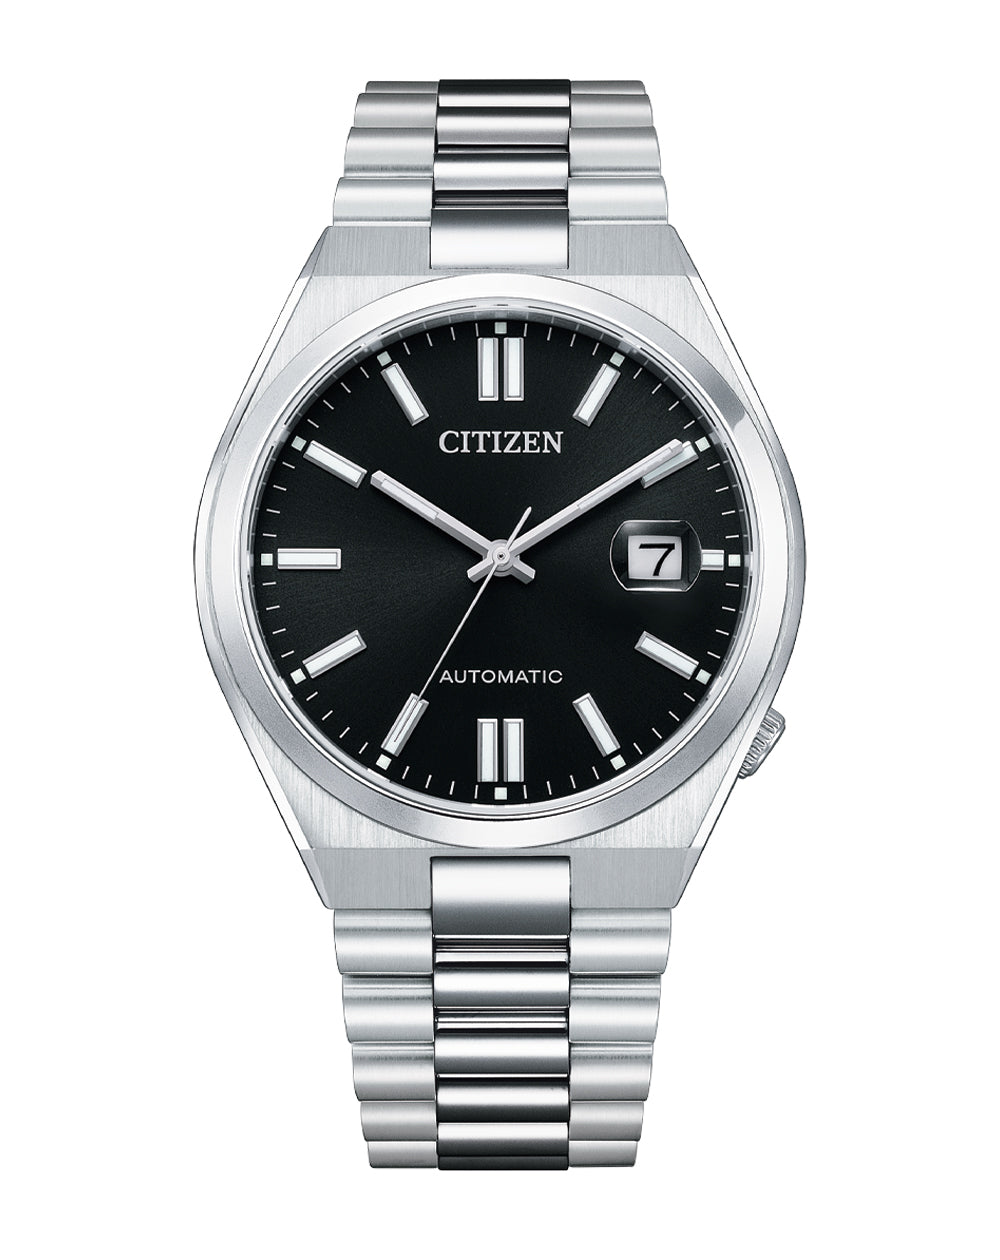 Citizen “TSUYOSA” Collection Black Dial Watch